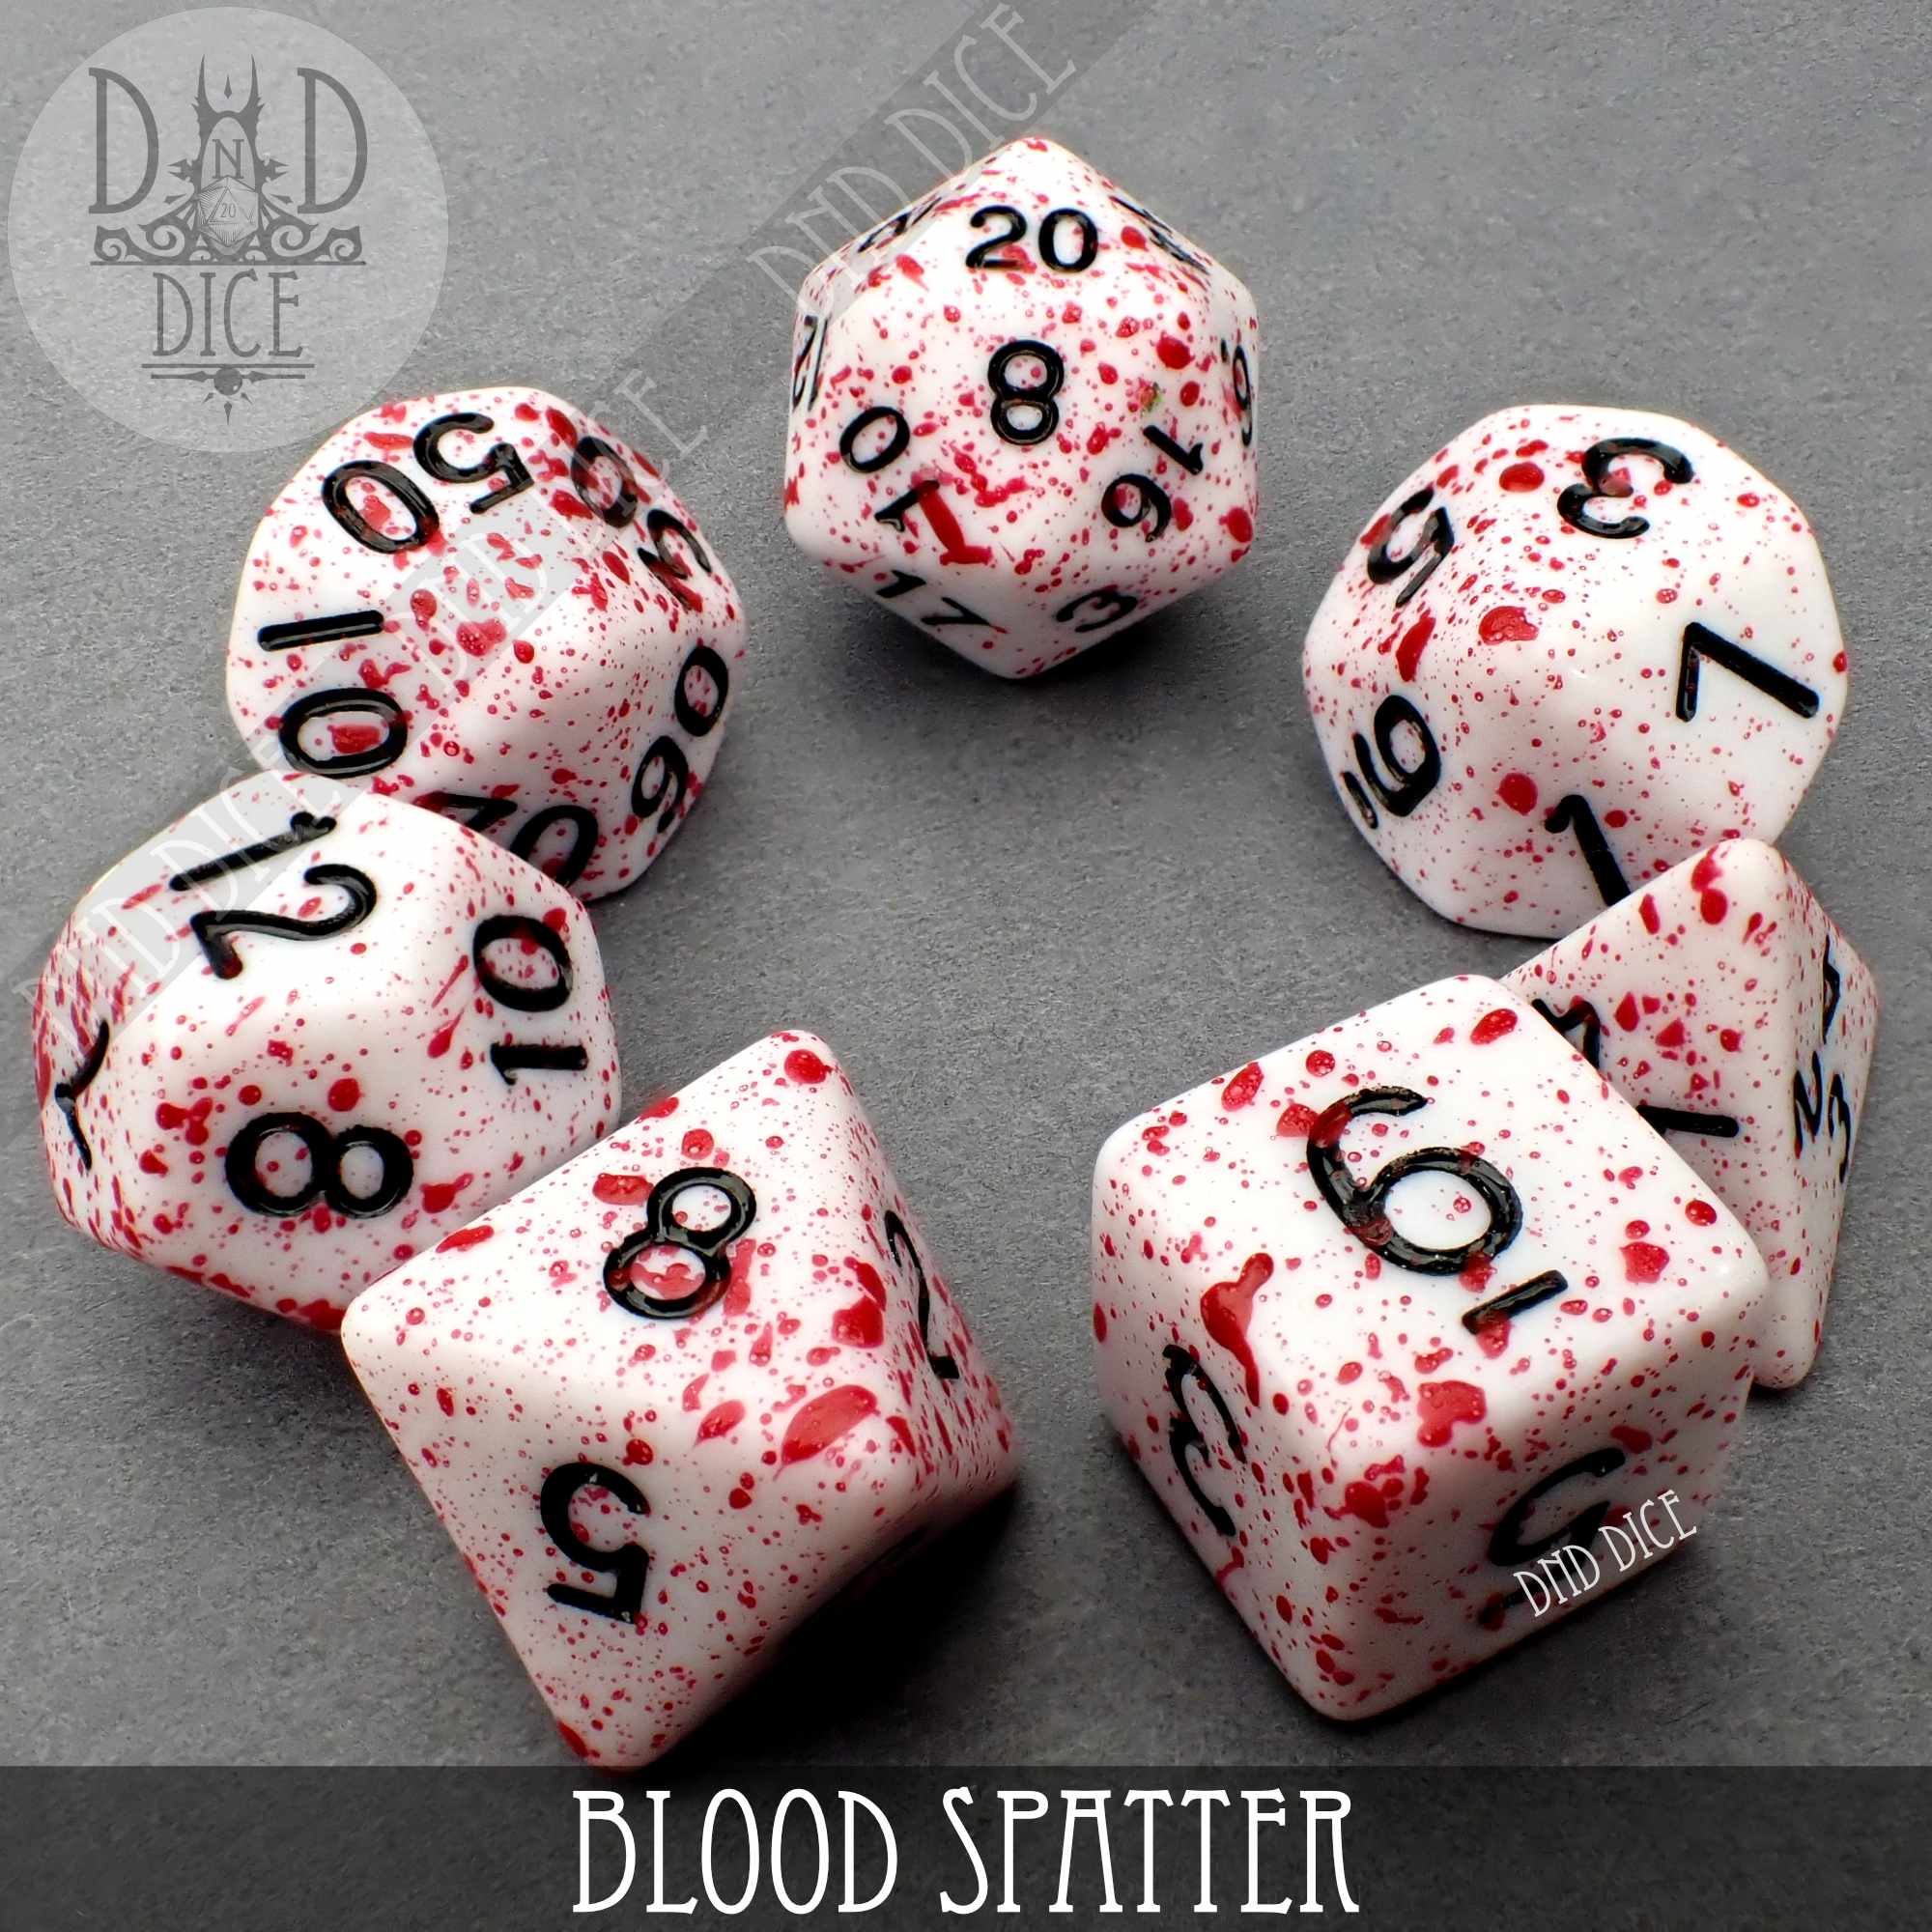 Blood Spatter Dice Set